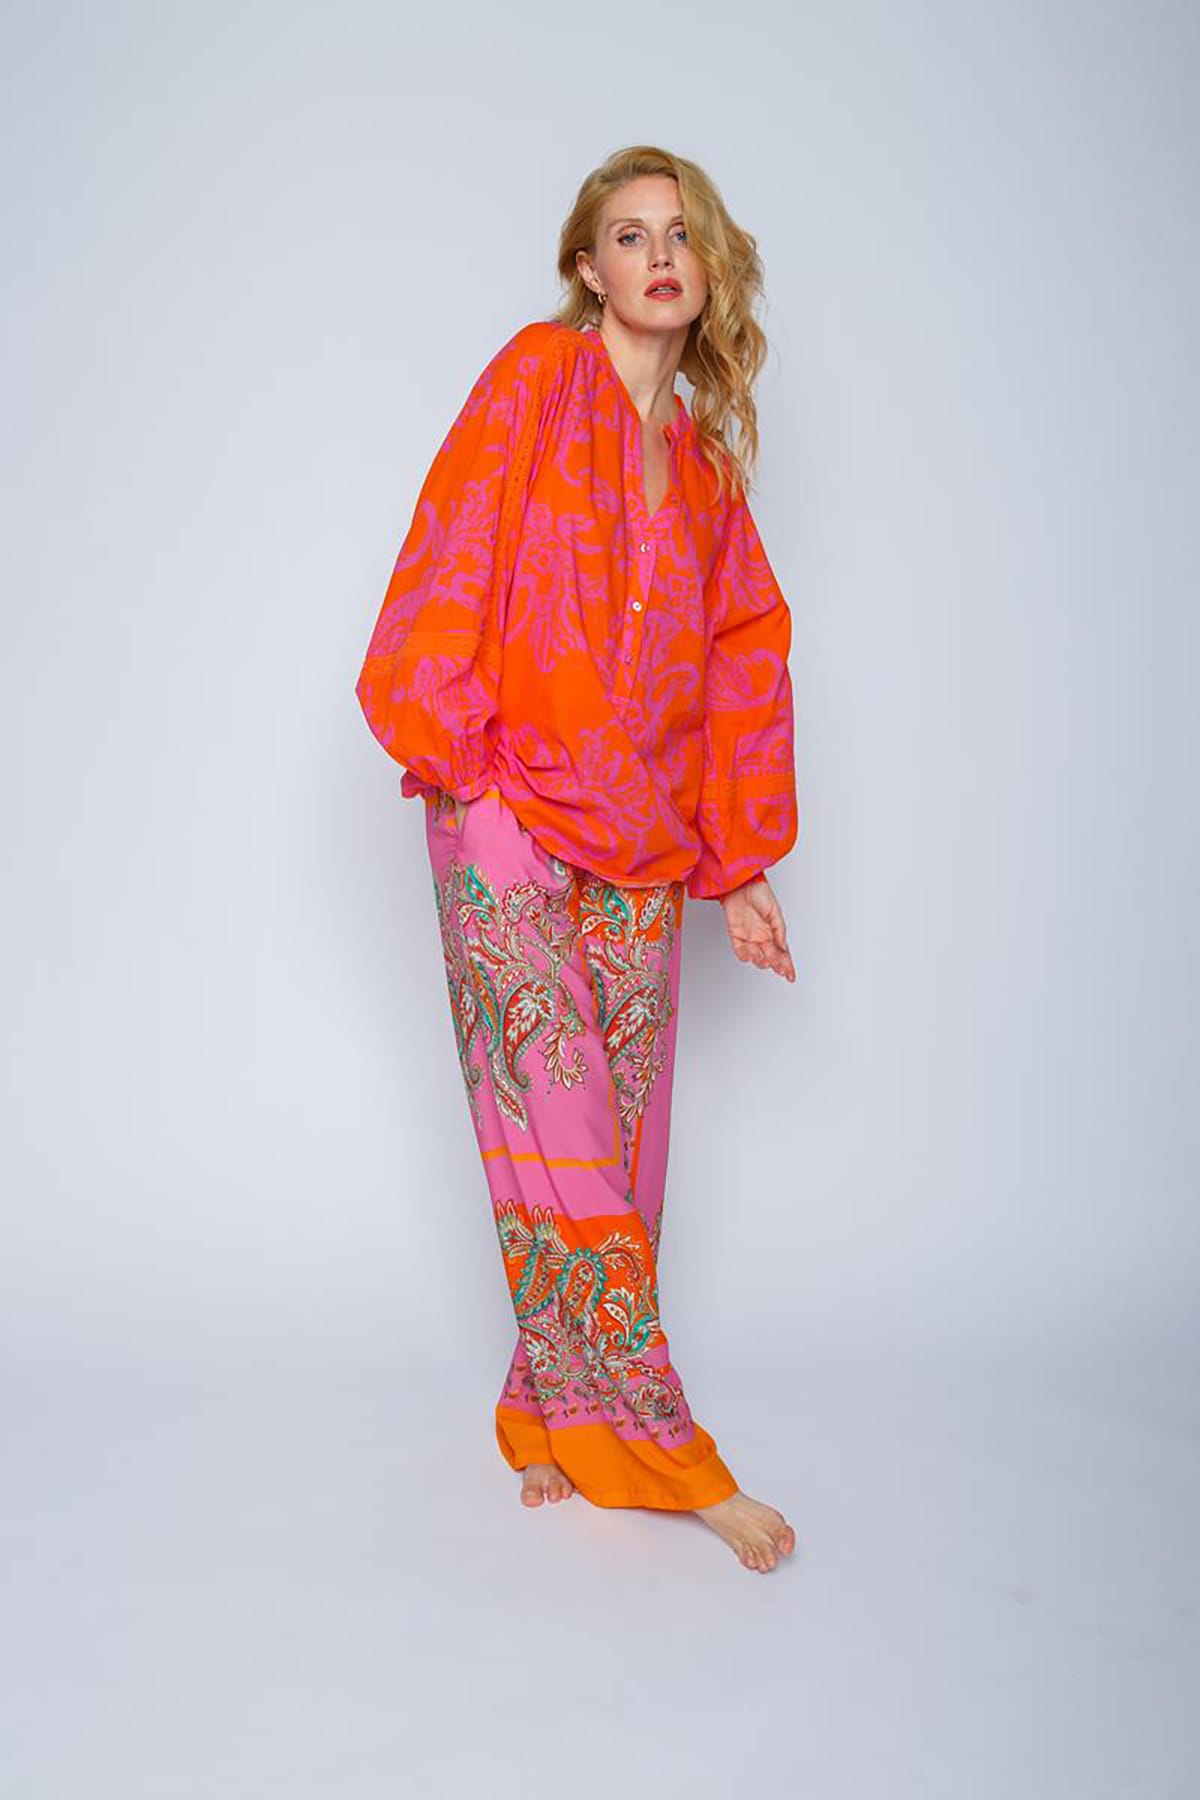 Weite Shirtbluse mit V-Ausschnitt und halber Knopfleiste orange pink paisley Bluse Emily van den Bergh 